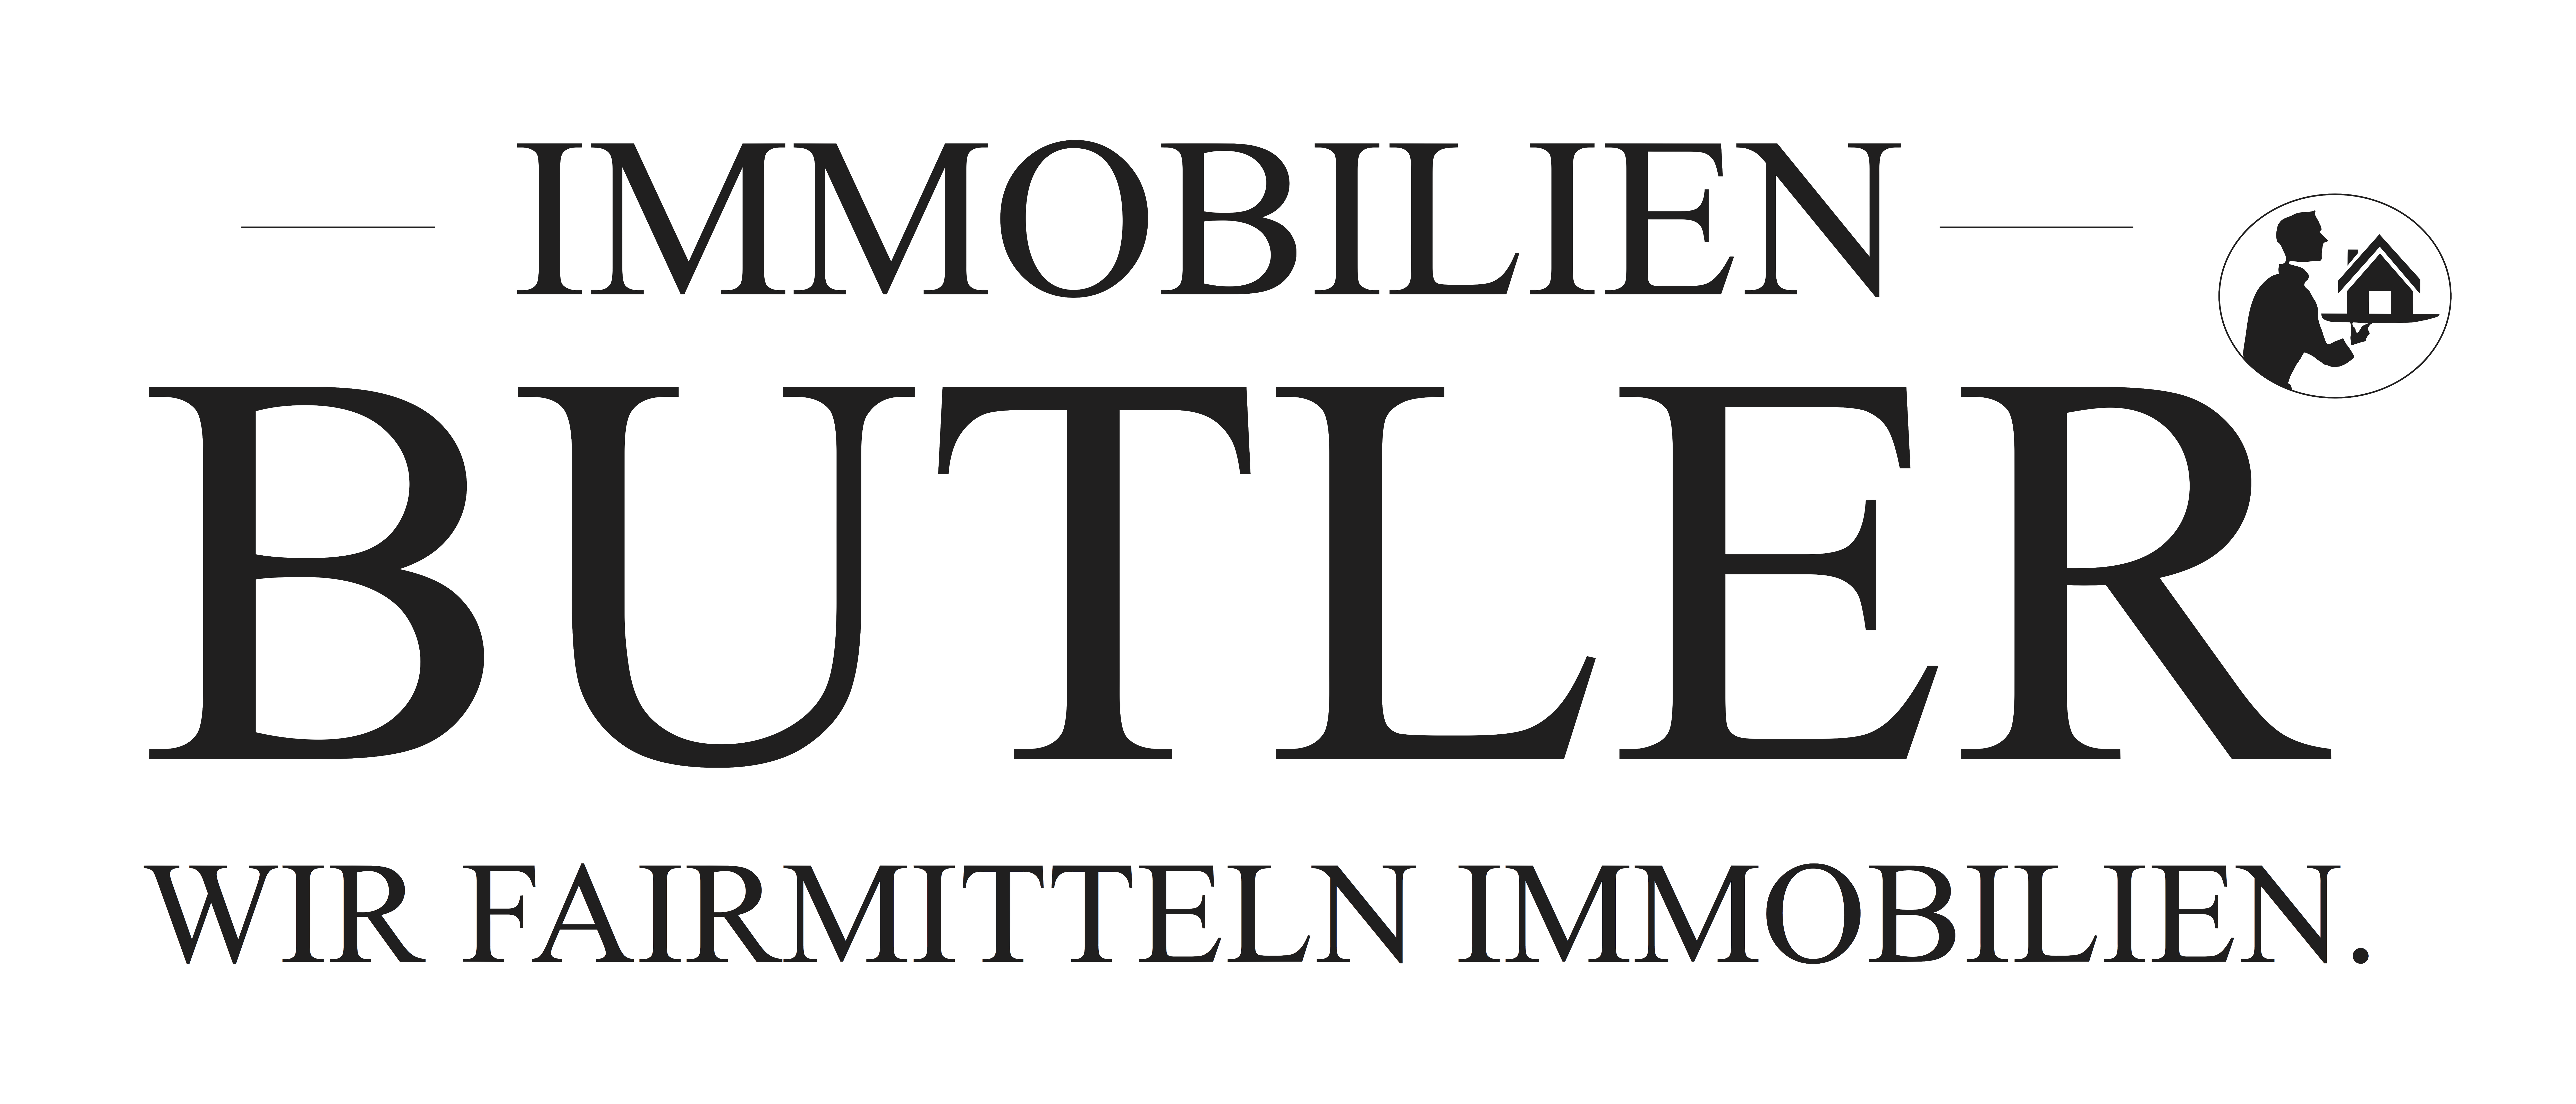 IMMOBILIEN BUTLER Logo